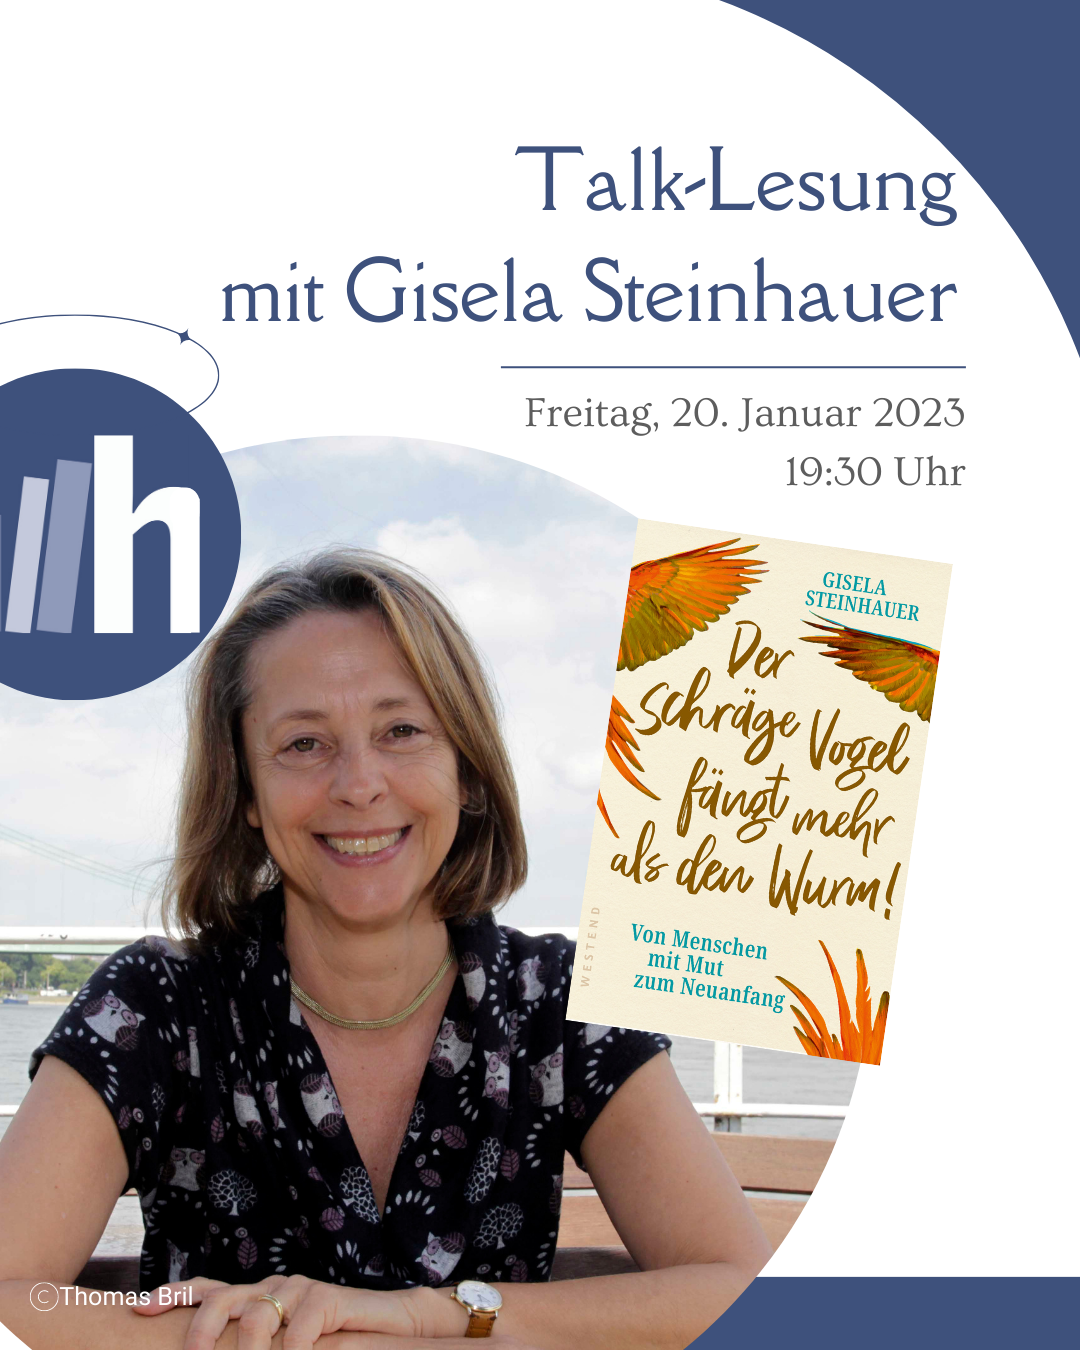 Talk-Lesung mit Gisela Steinhauer